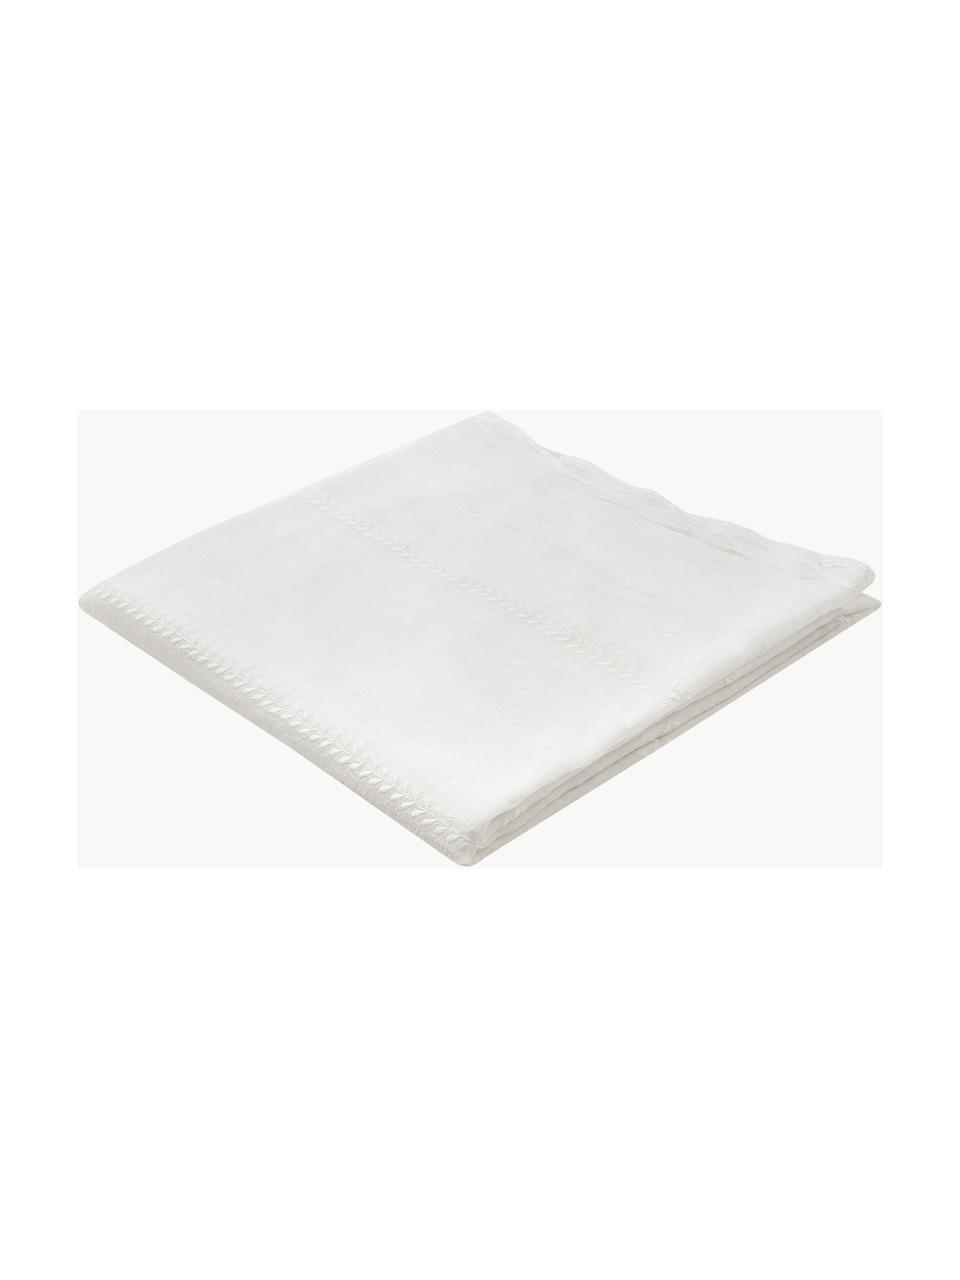 Nappe brodée avec ourlet festonné Bilia, 100 % polyester, Blanc cassé, Pour 6 à 10 pers. (larg. 160 x long. 320 cm)